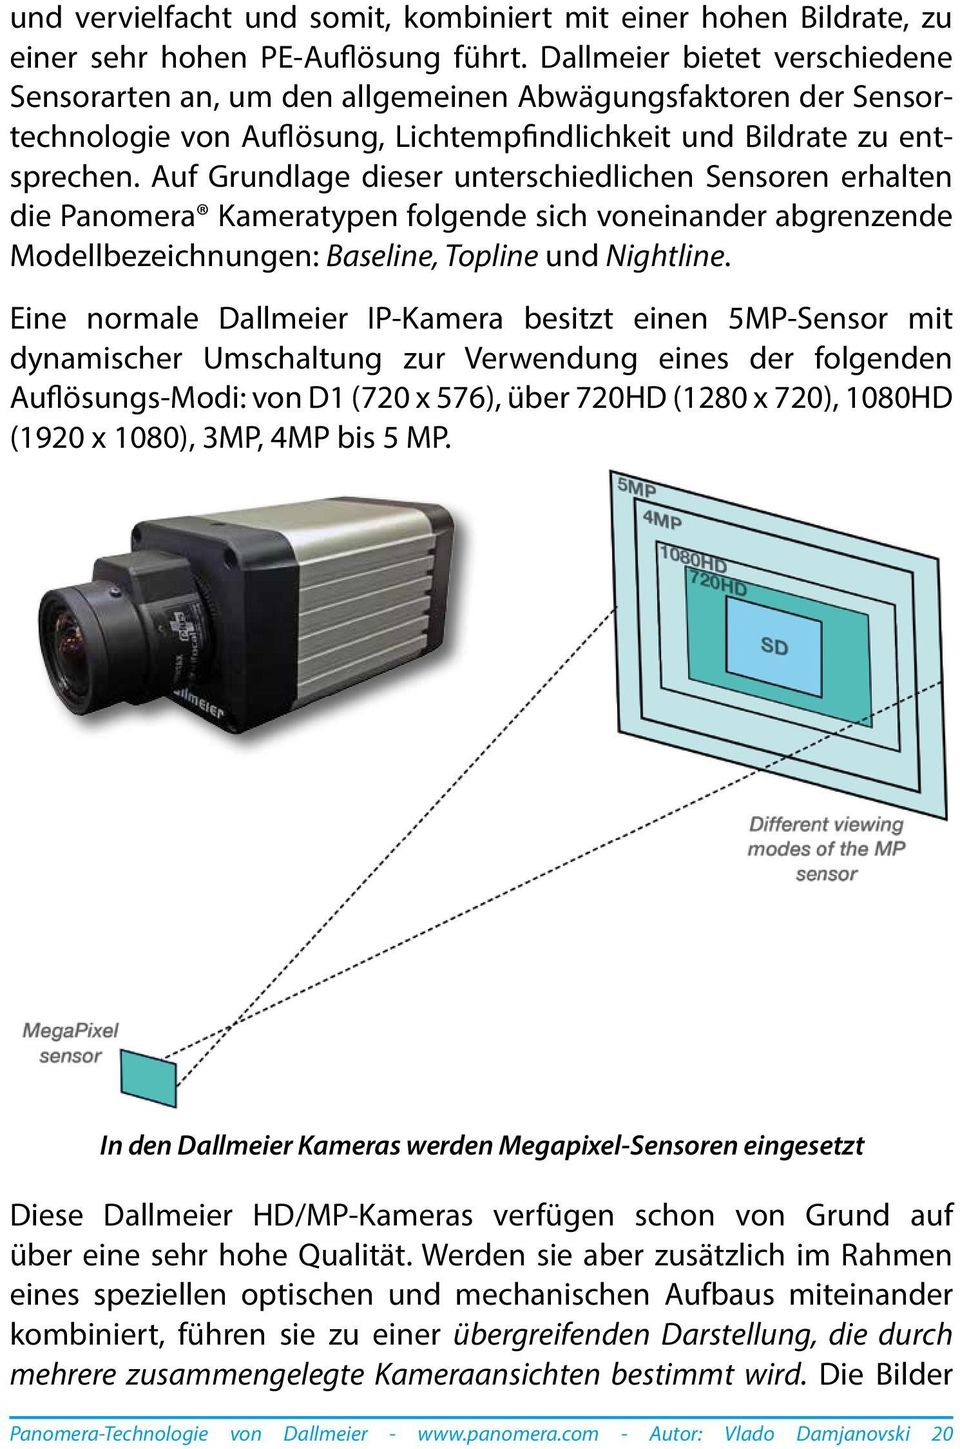 Auf Grundlage dieser unterschiedlichen Sensoren erhalten die Panomera Kameratypen folgende sich voneinander abgrenzende Modellbezeichnungen: Baseline, Topline und Nightline.